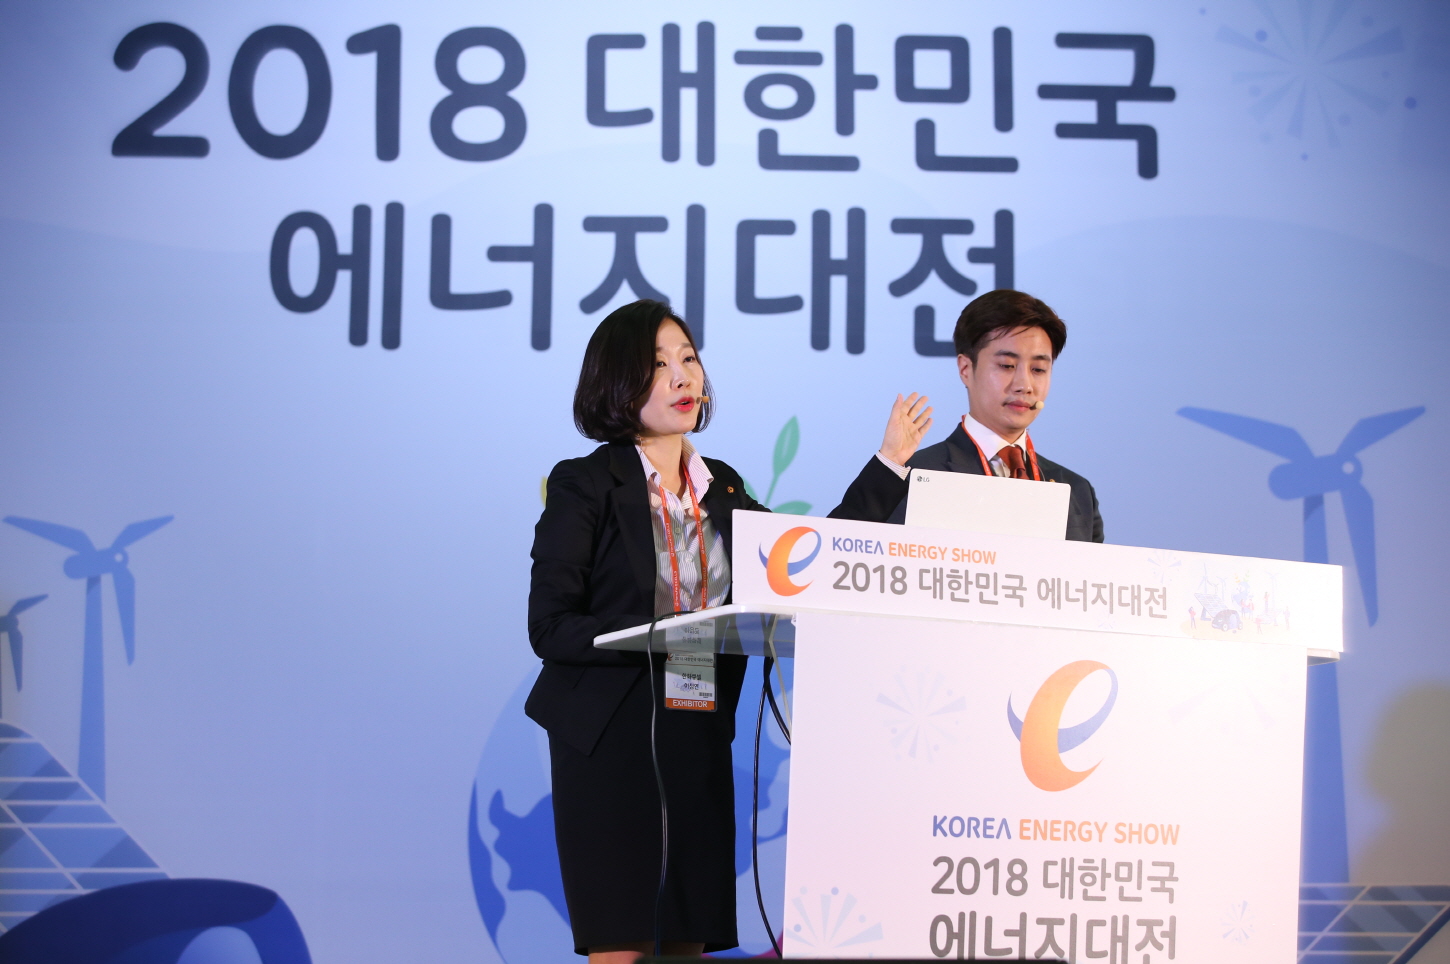 2018 대한민국 에너지대전 신제품 발표회